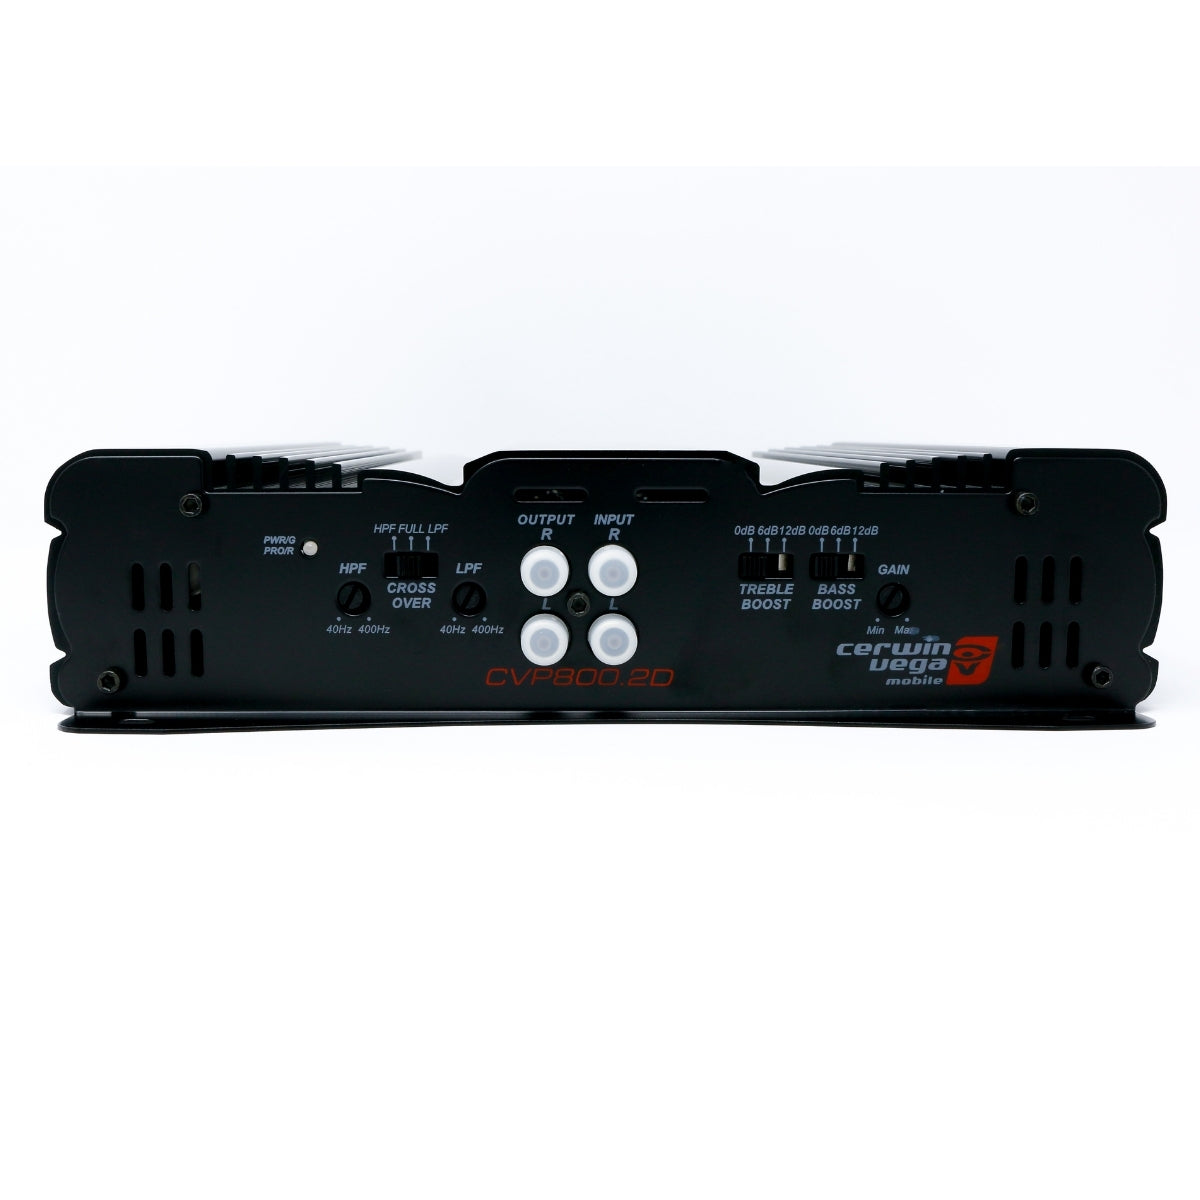 CVP800.2D - 2 Channel Bridgeable Class AB Amplifier with Bass Control Knob